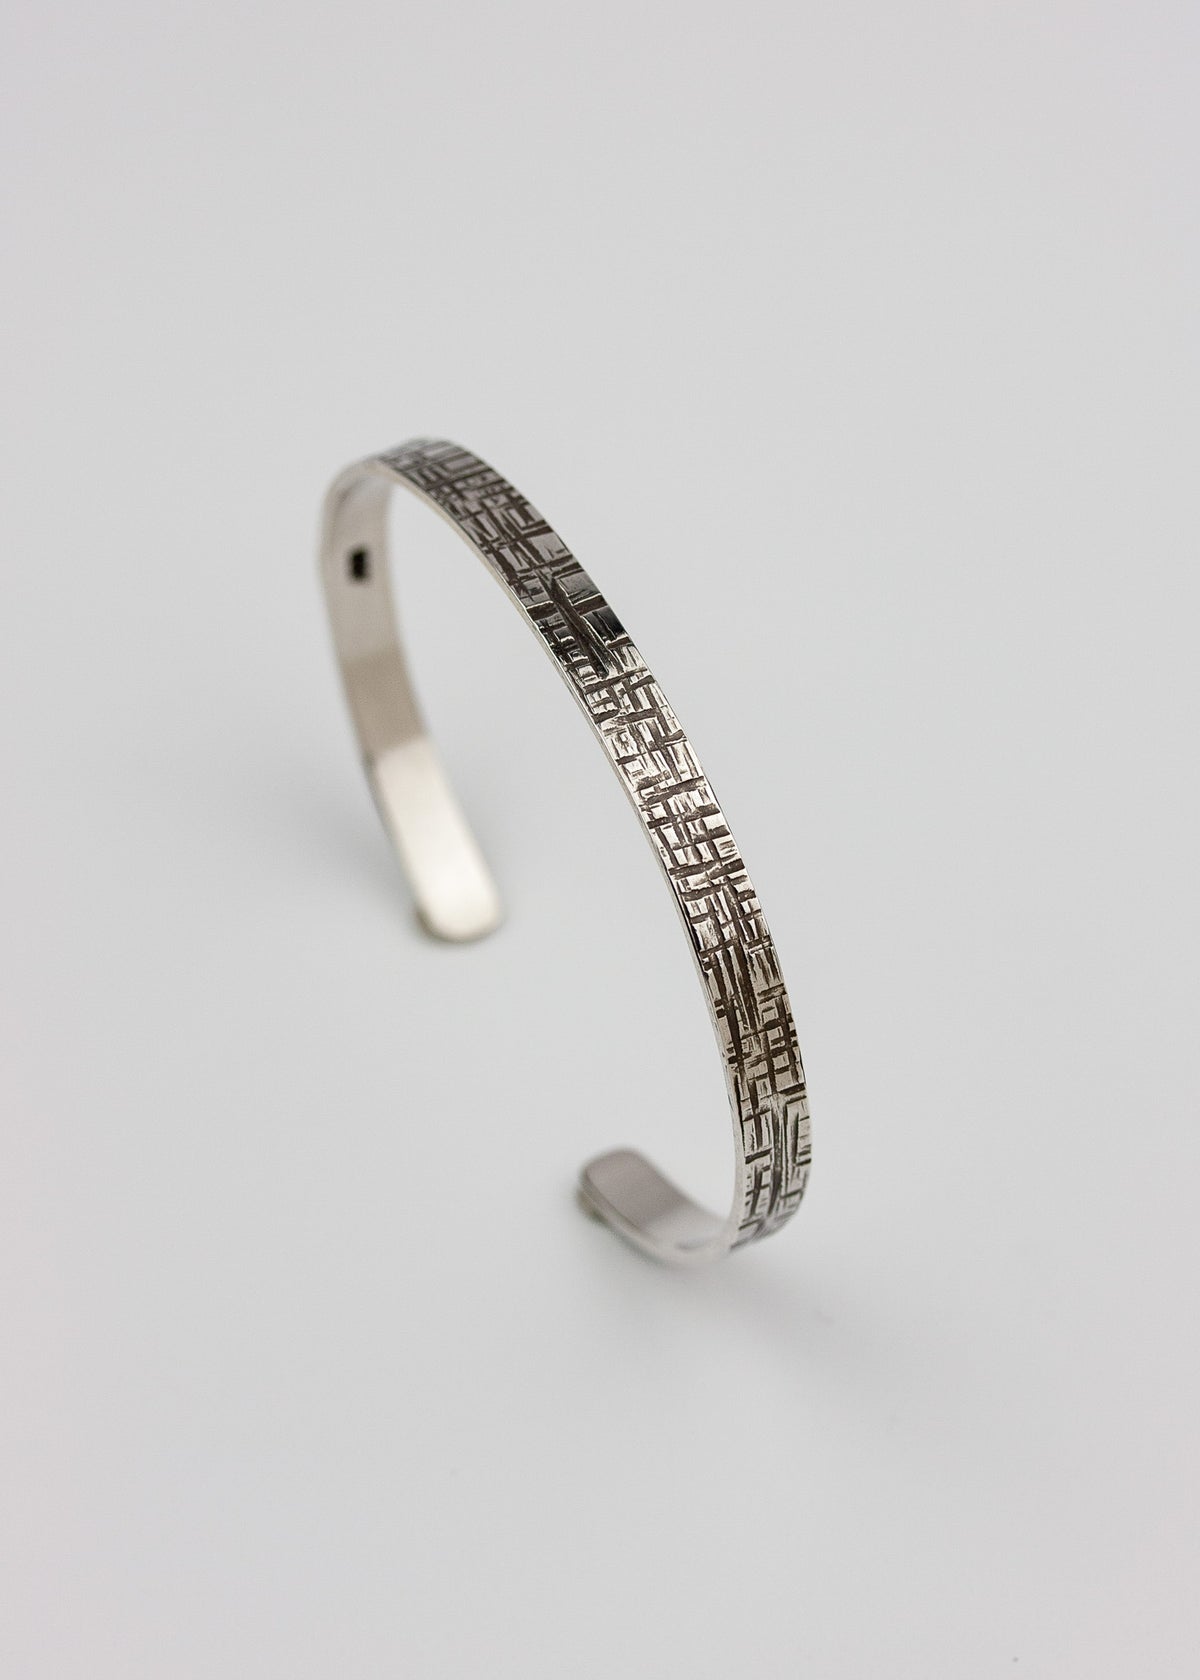 Surfite Geometric Statement Cuff Bracelet in Sterling Silver Cuff